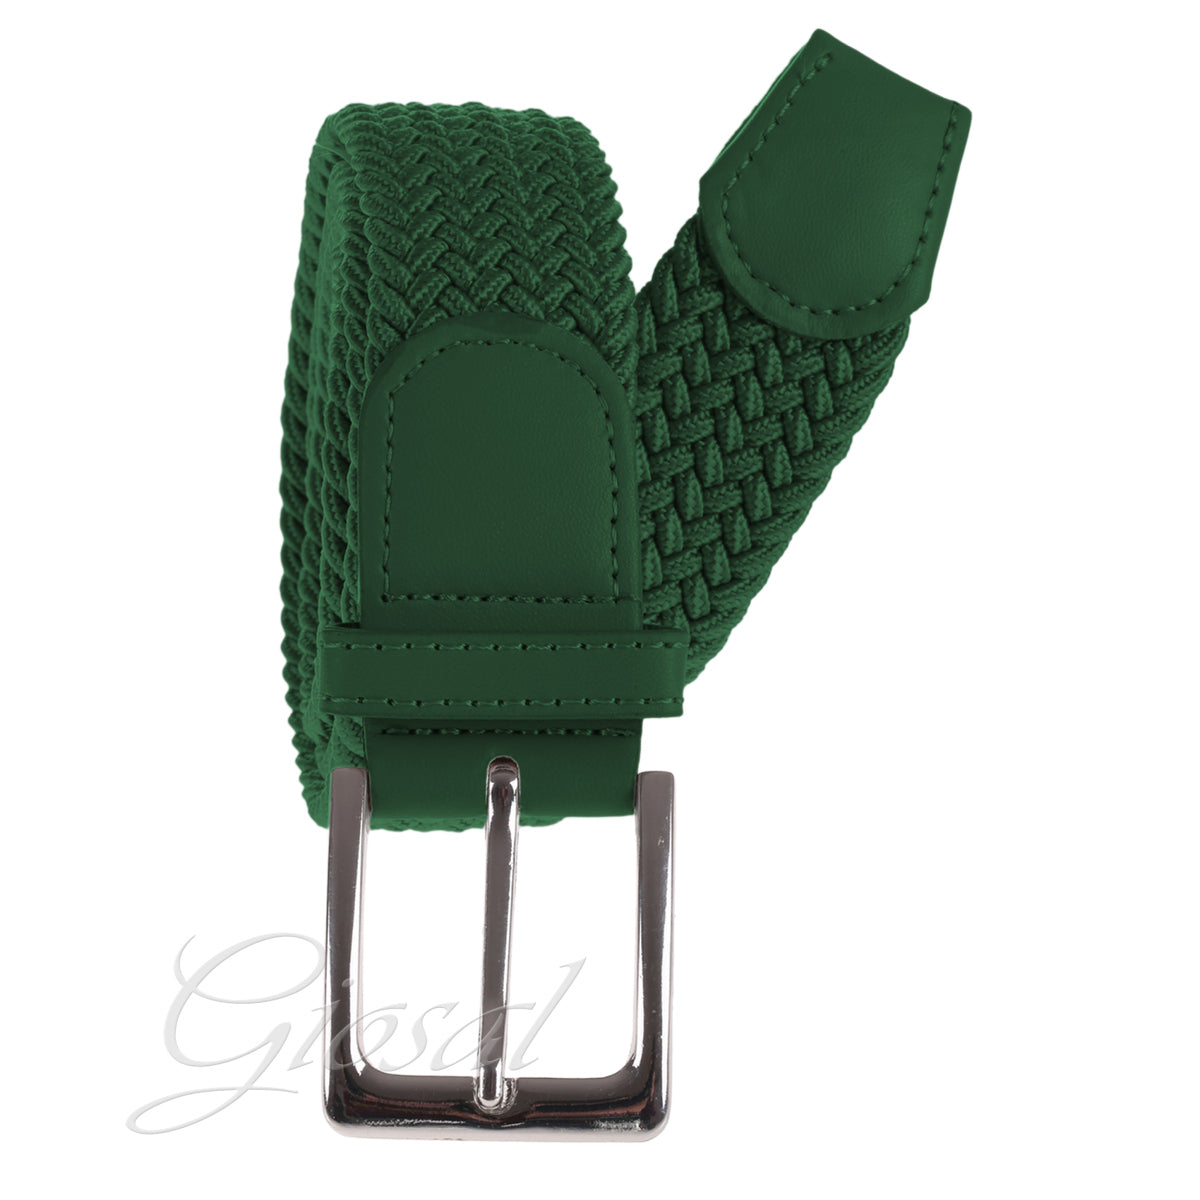 Cintura Cinta Uomo Elastica Regolabile Fibbia In Metallo Tinta Unita Verde GIOSAL-A2029A